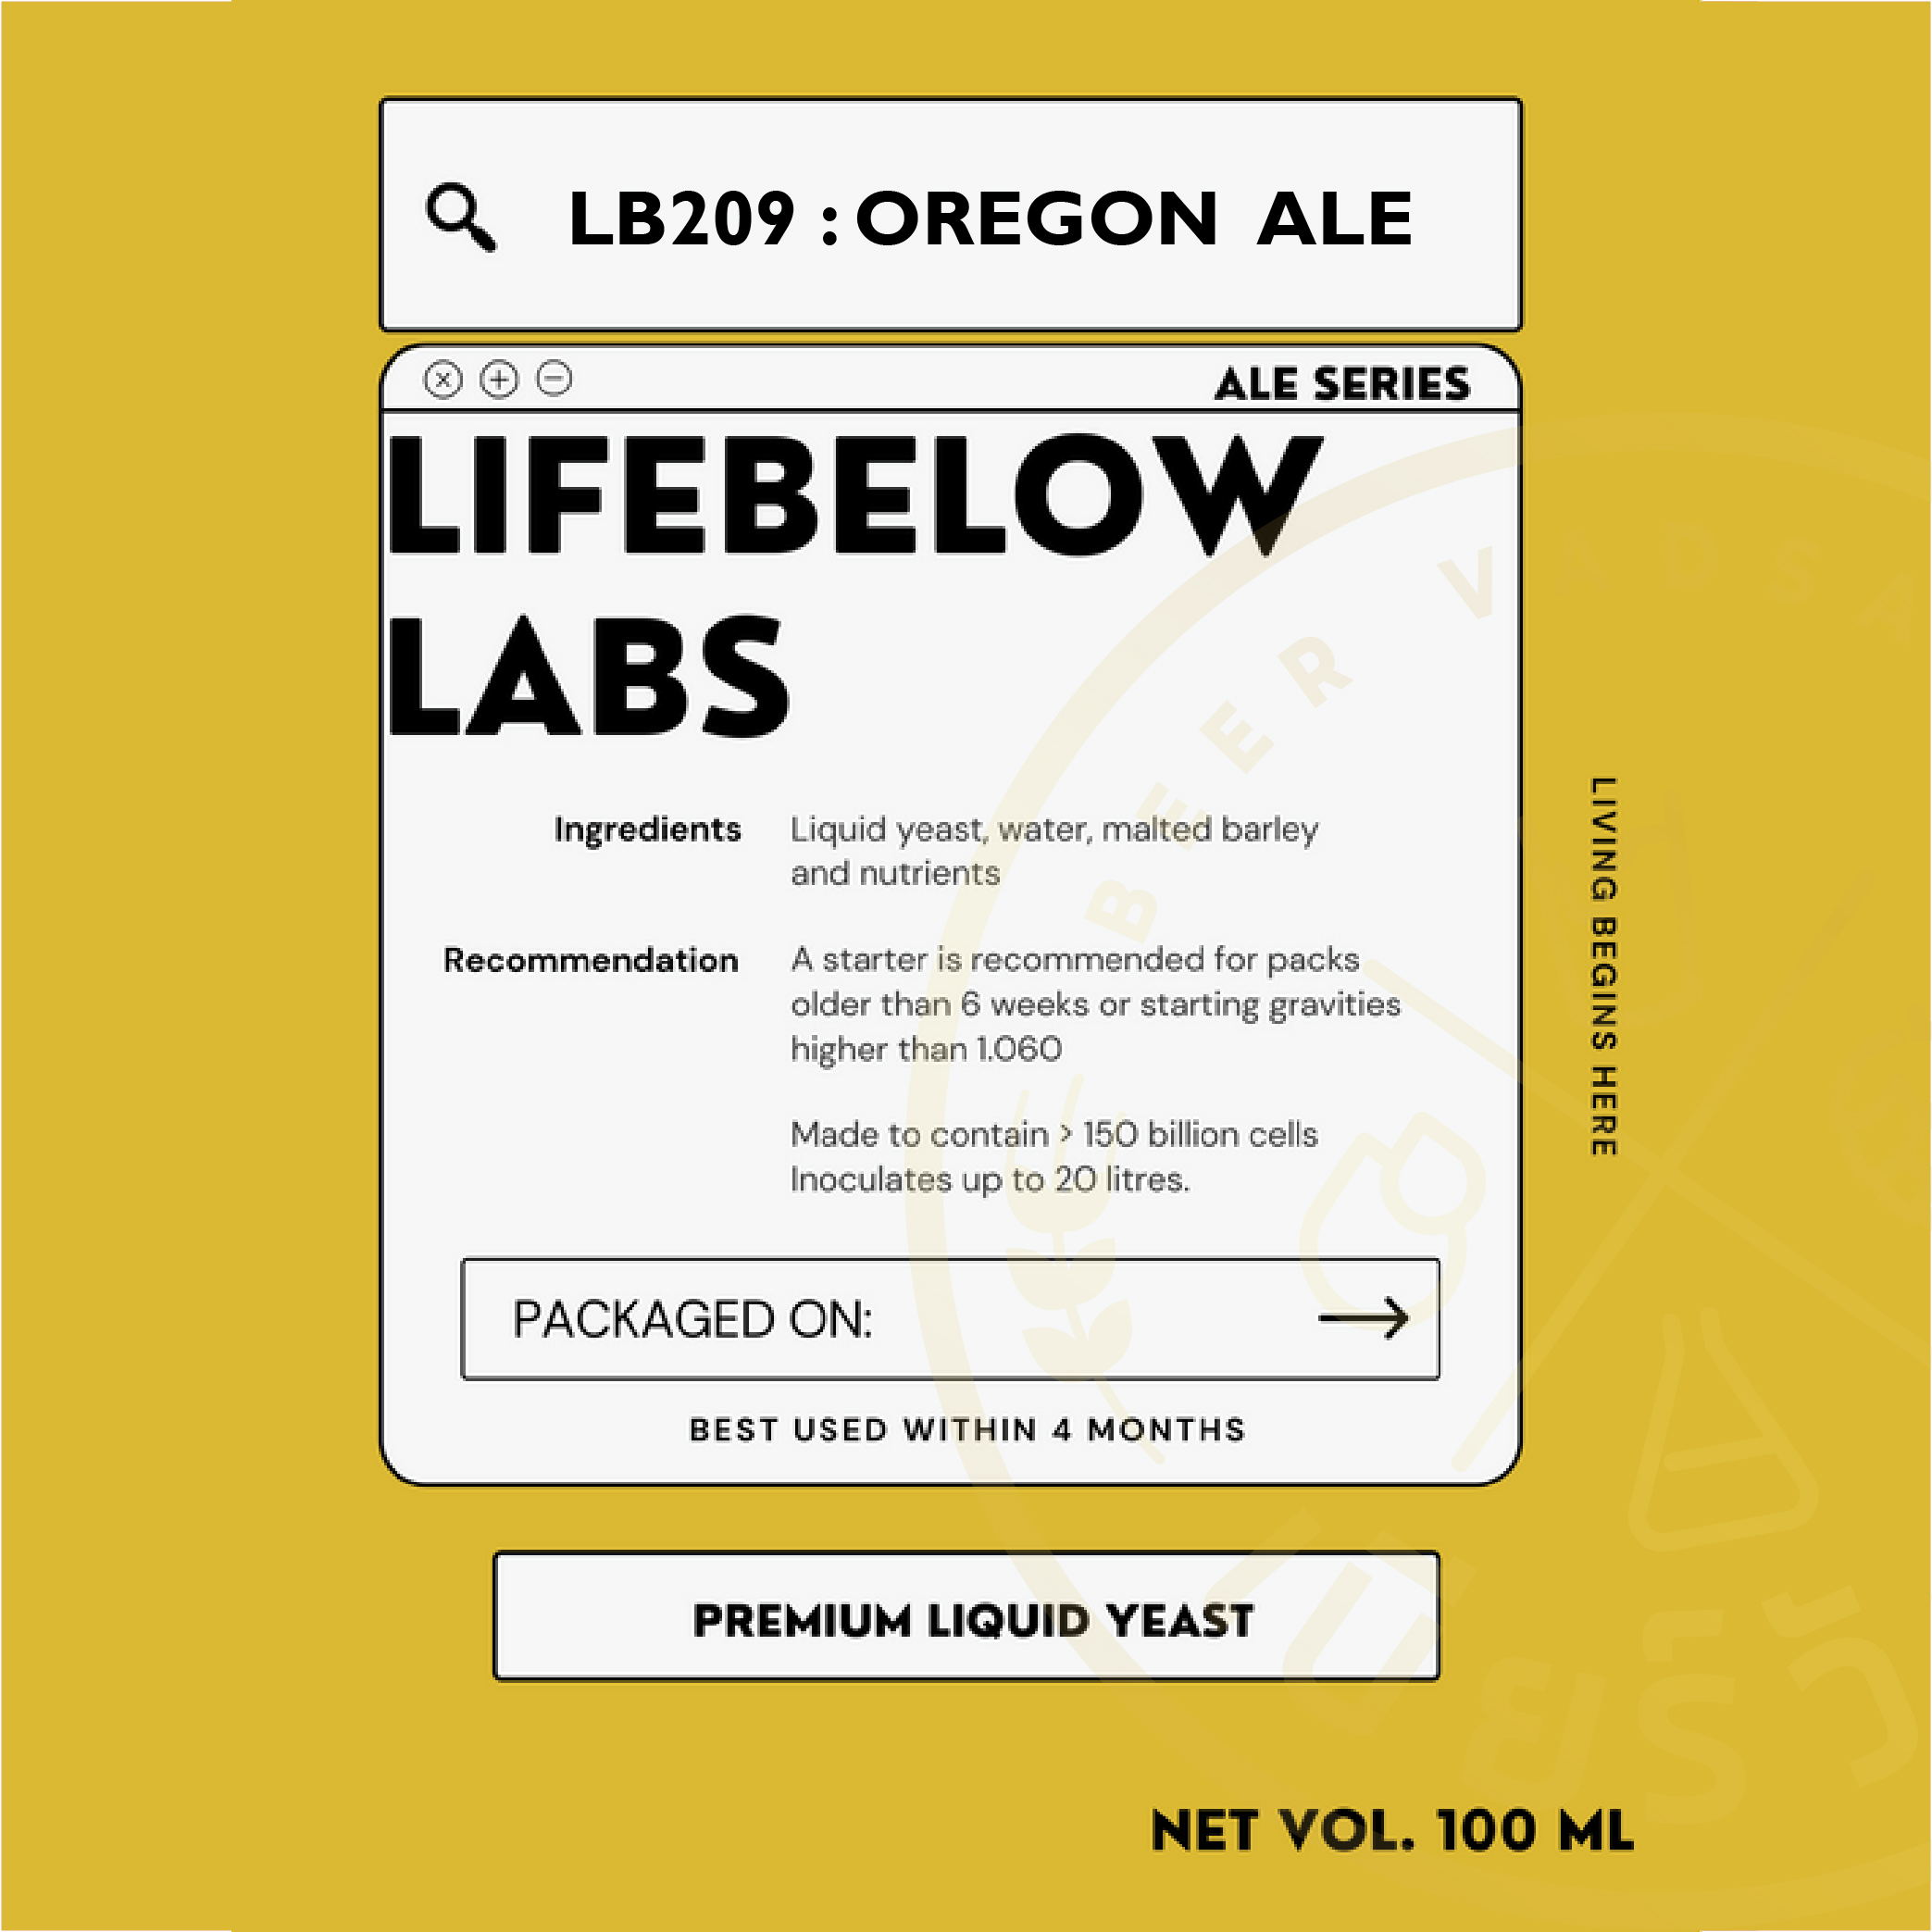 LB209 Oregon Ale (Life Below)